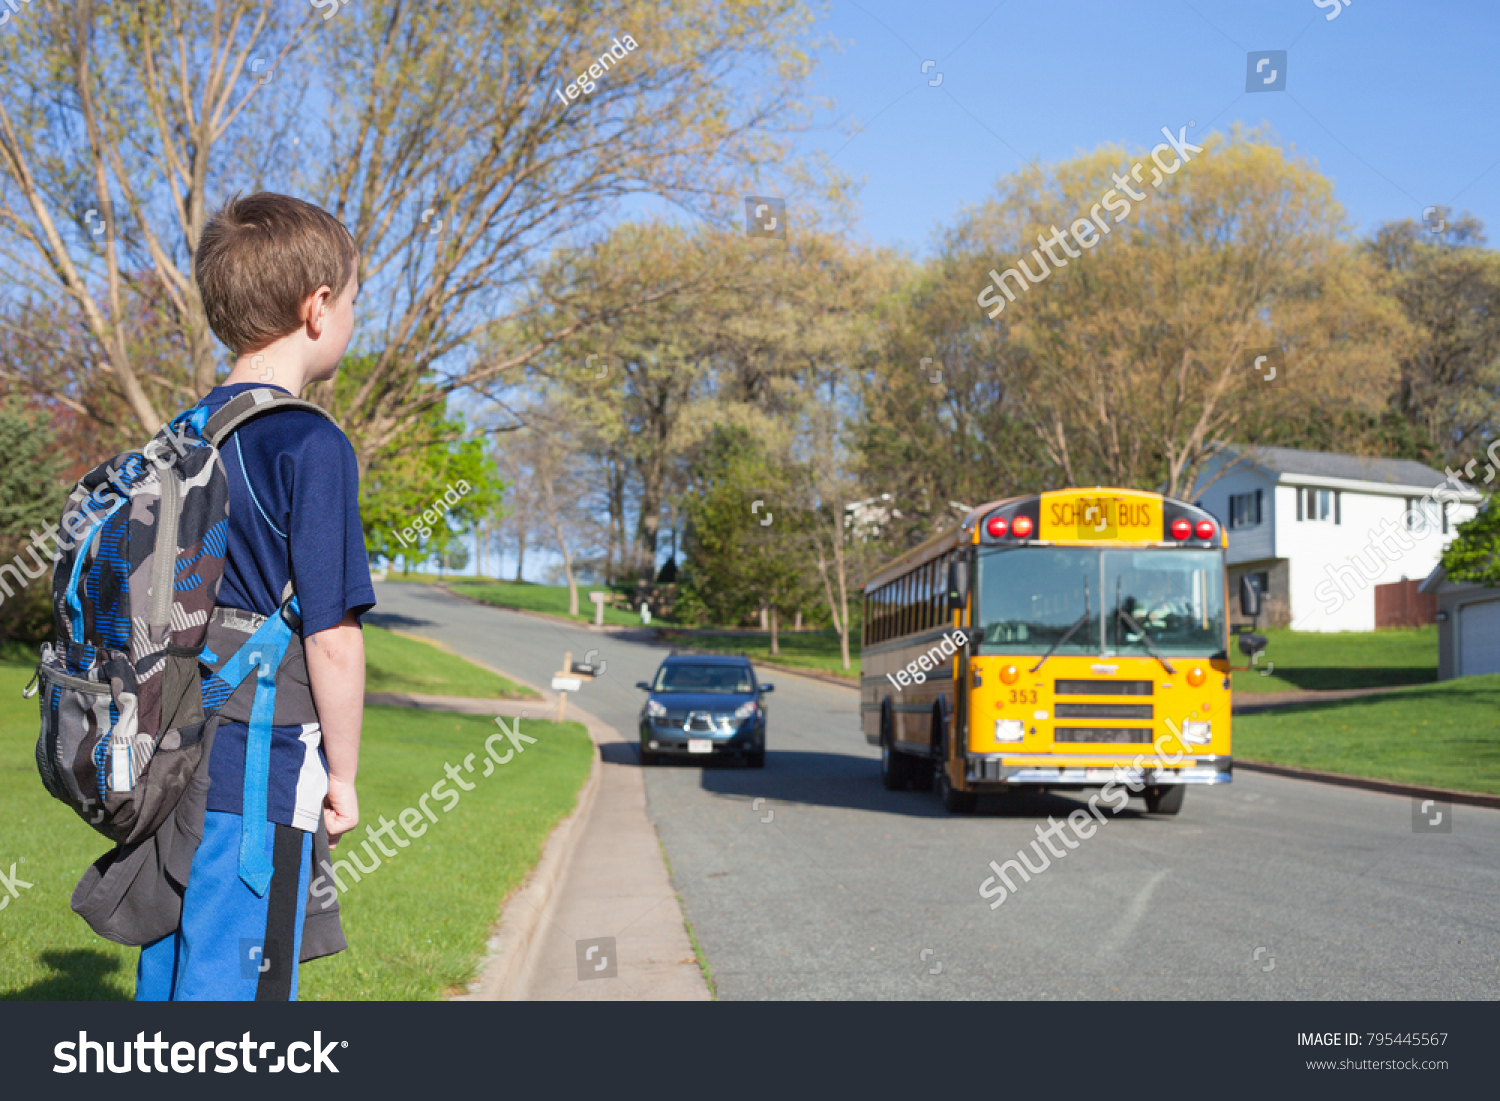 We are waiting for the bus. Школьники ждут автобус. Дети ждут школьный автобус. Мальчик ждет школьный автобус. Мальчик на автобусной остановке.